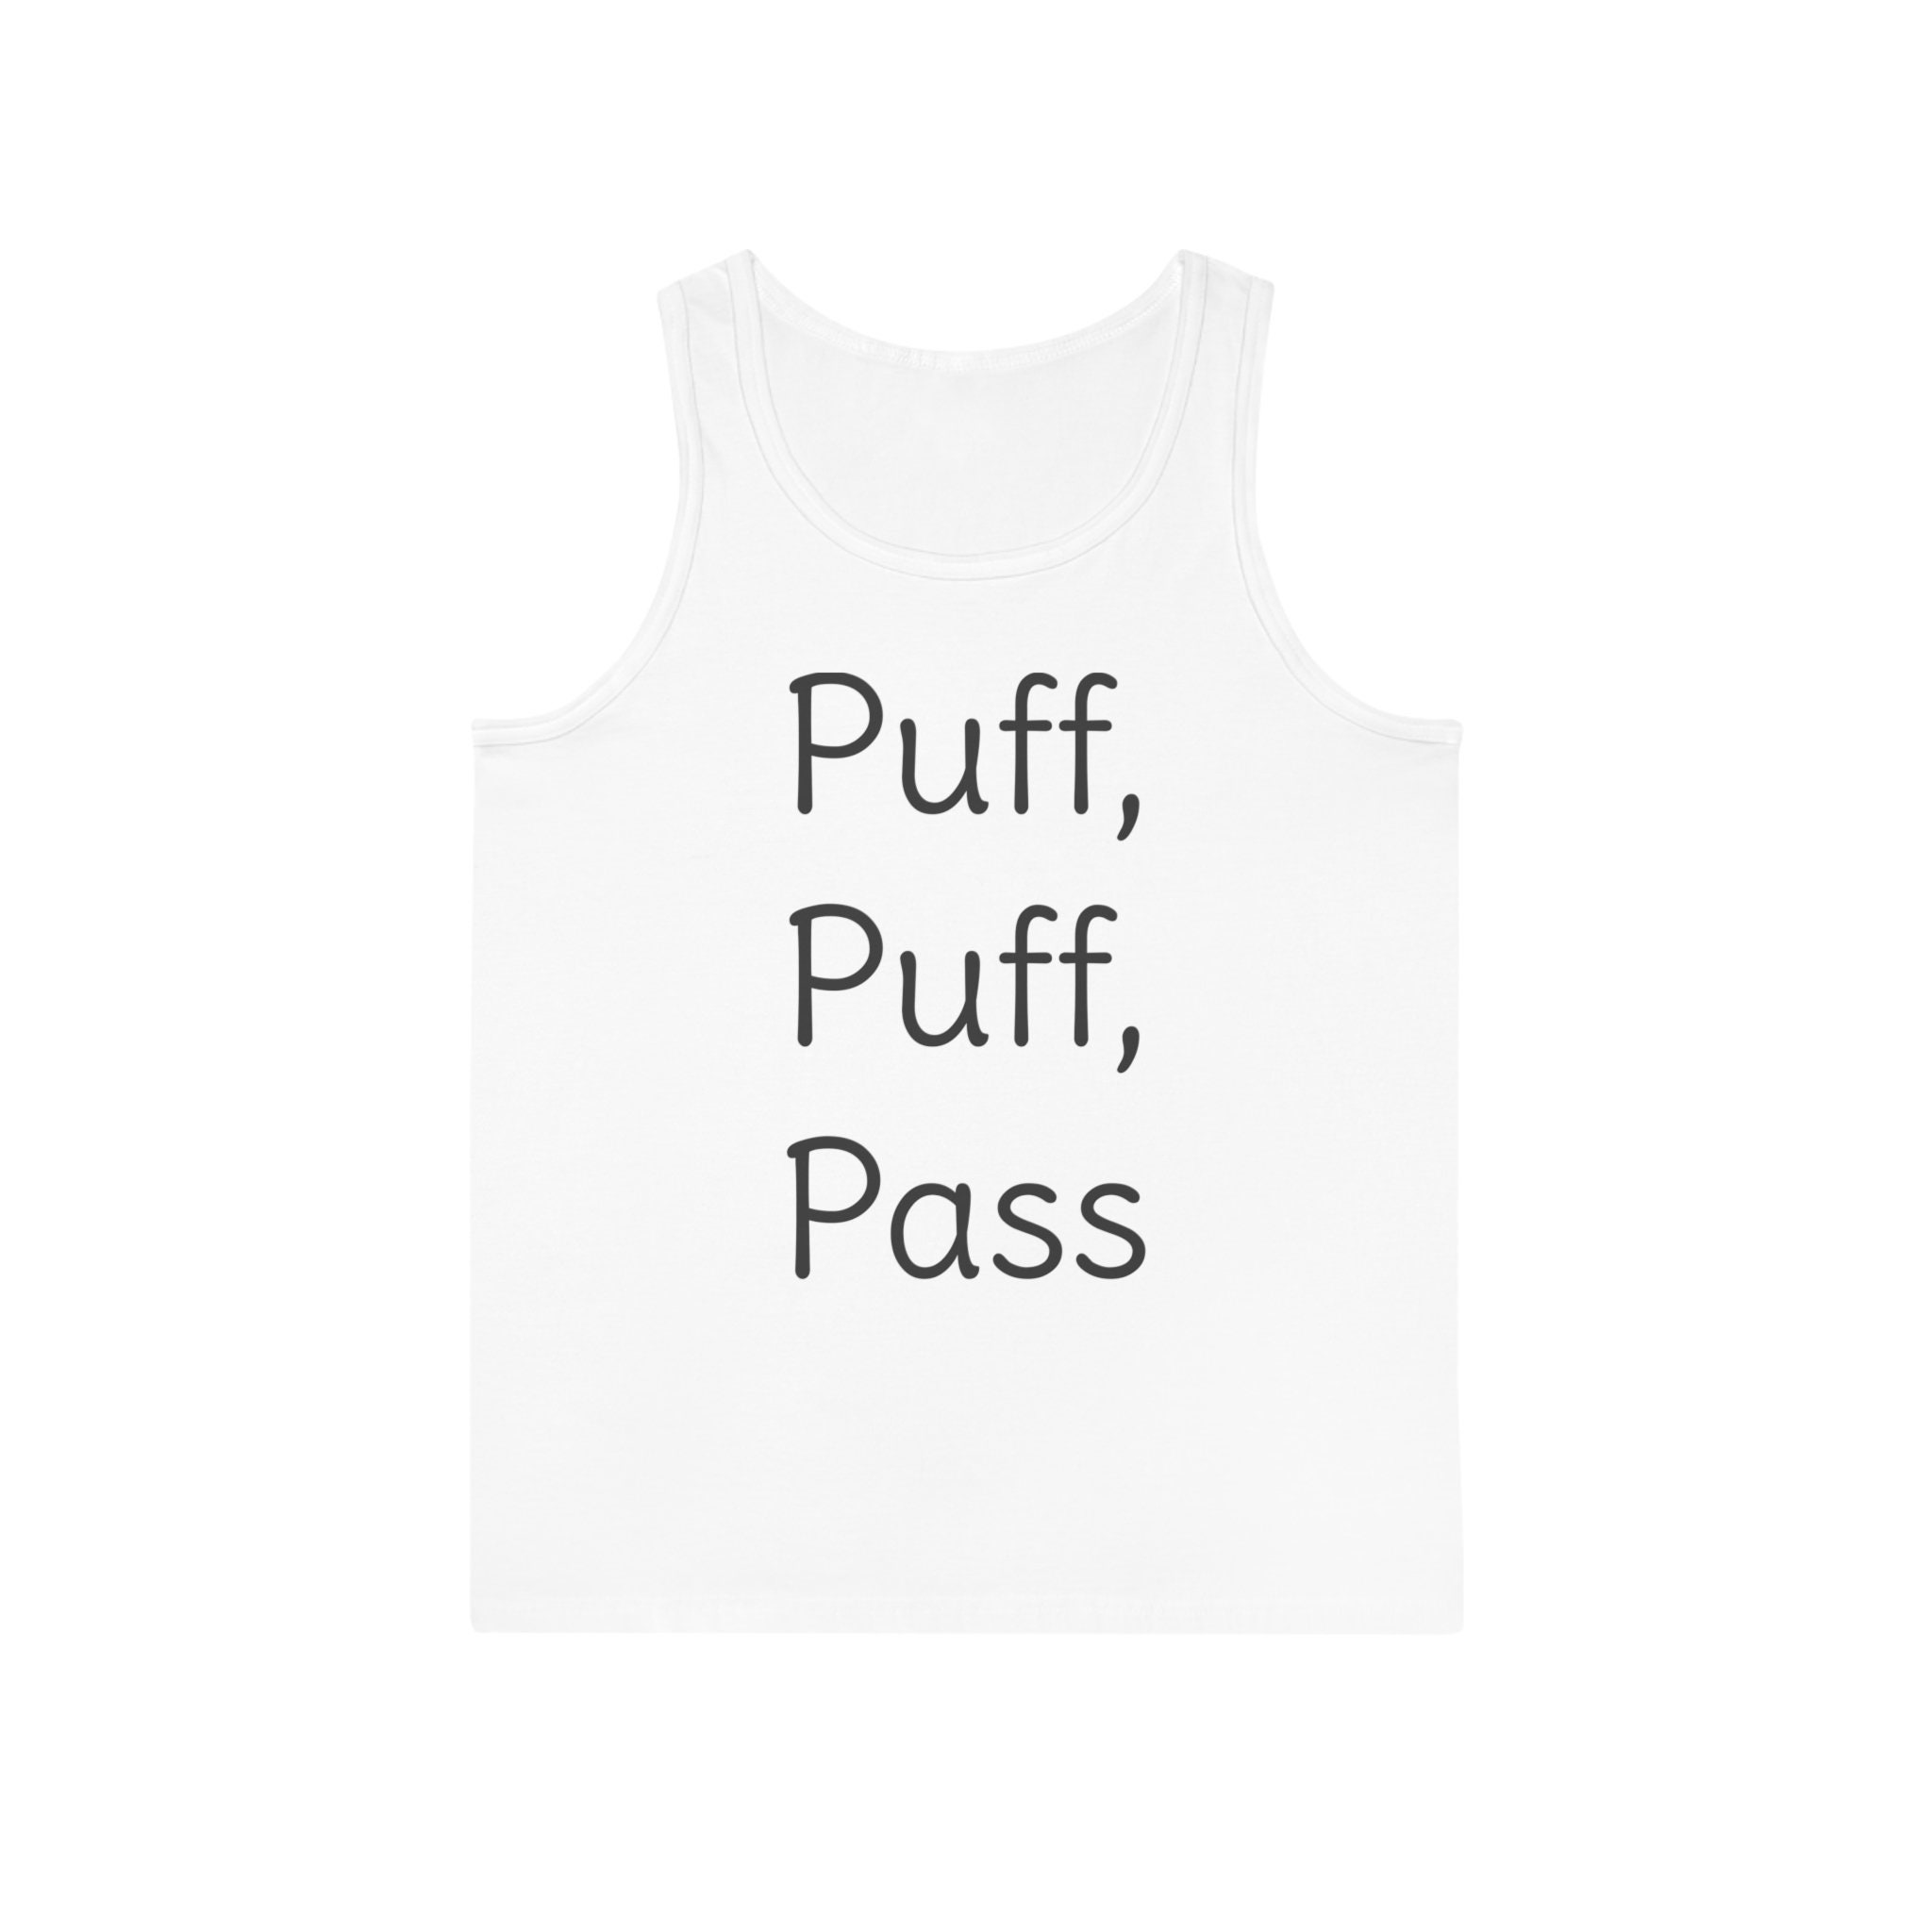 Puff Puff Pass Asthma Inhaler Funny Unisex T-Shirt